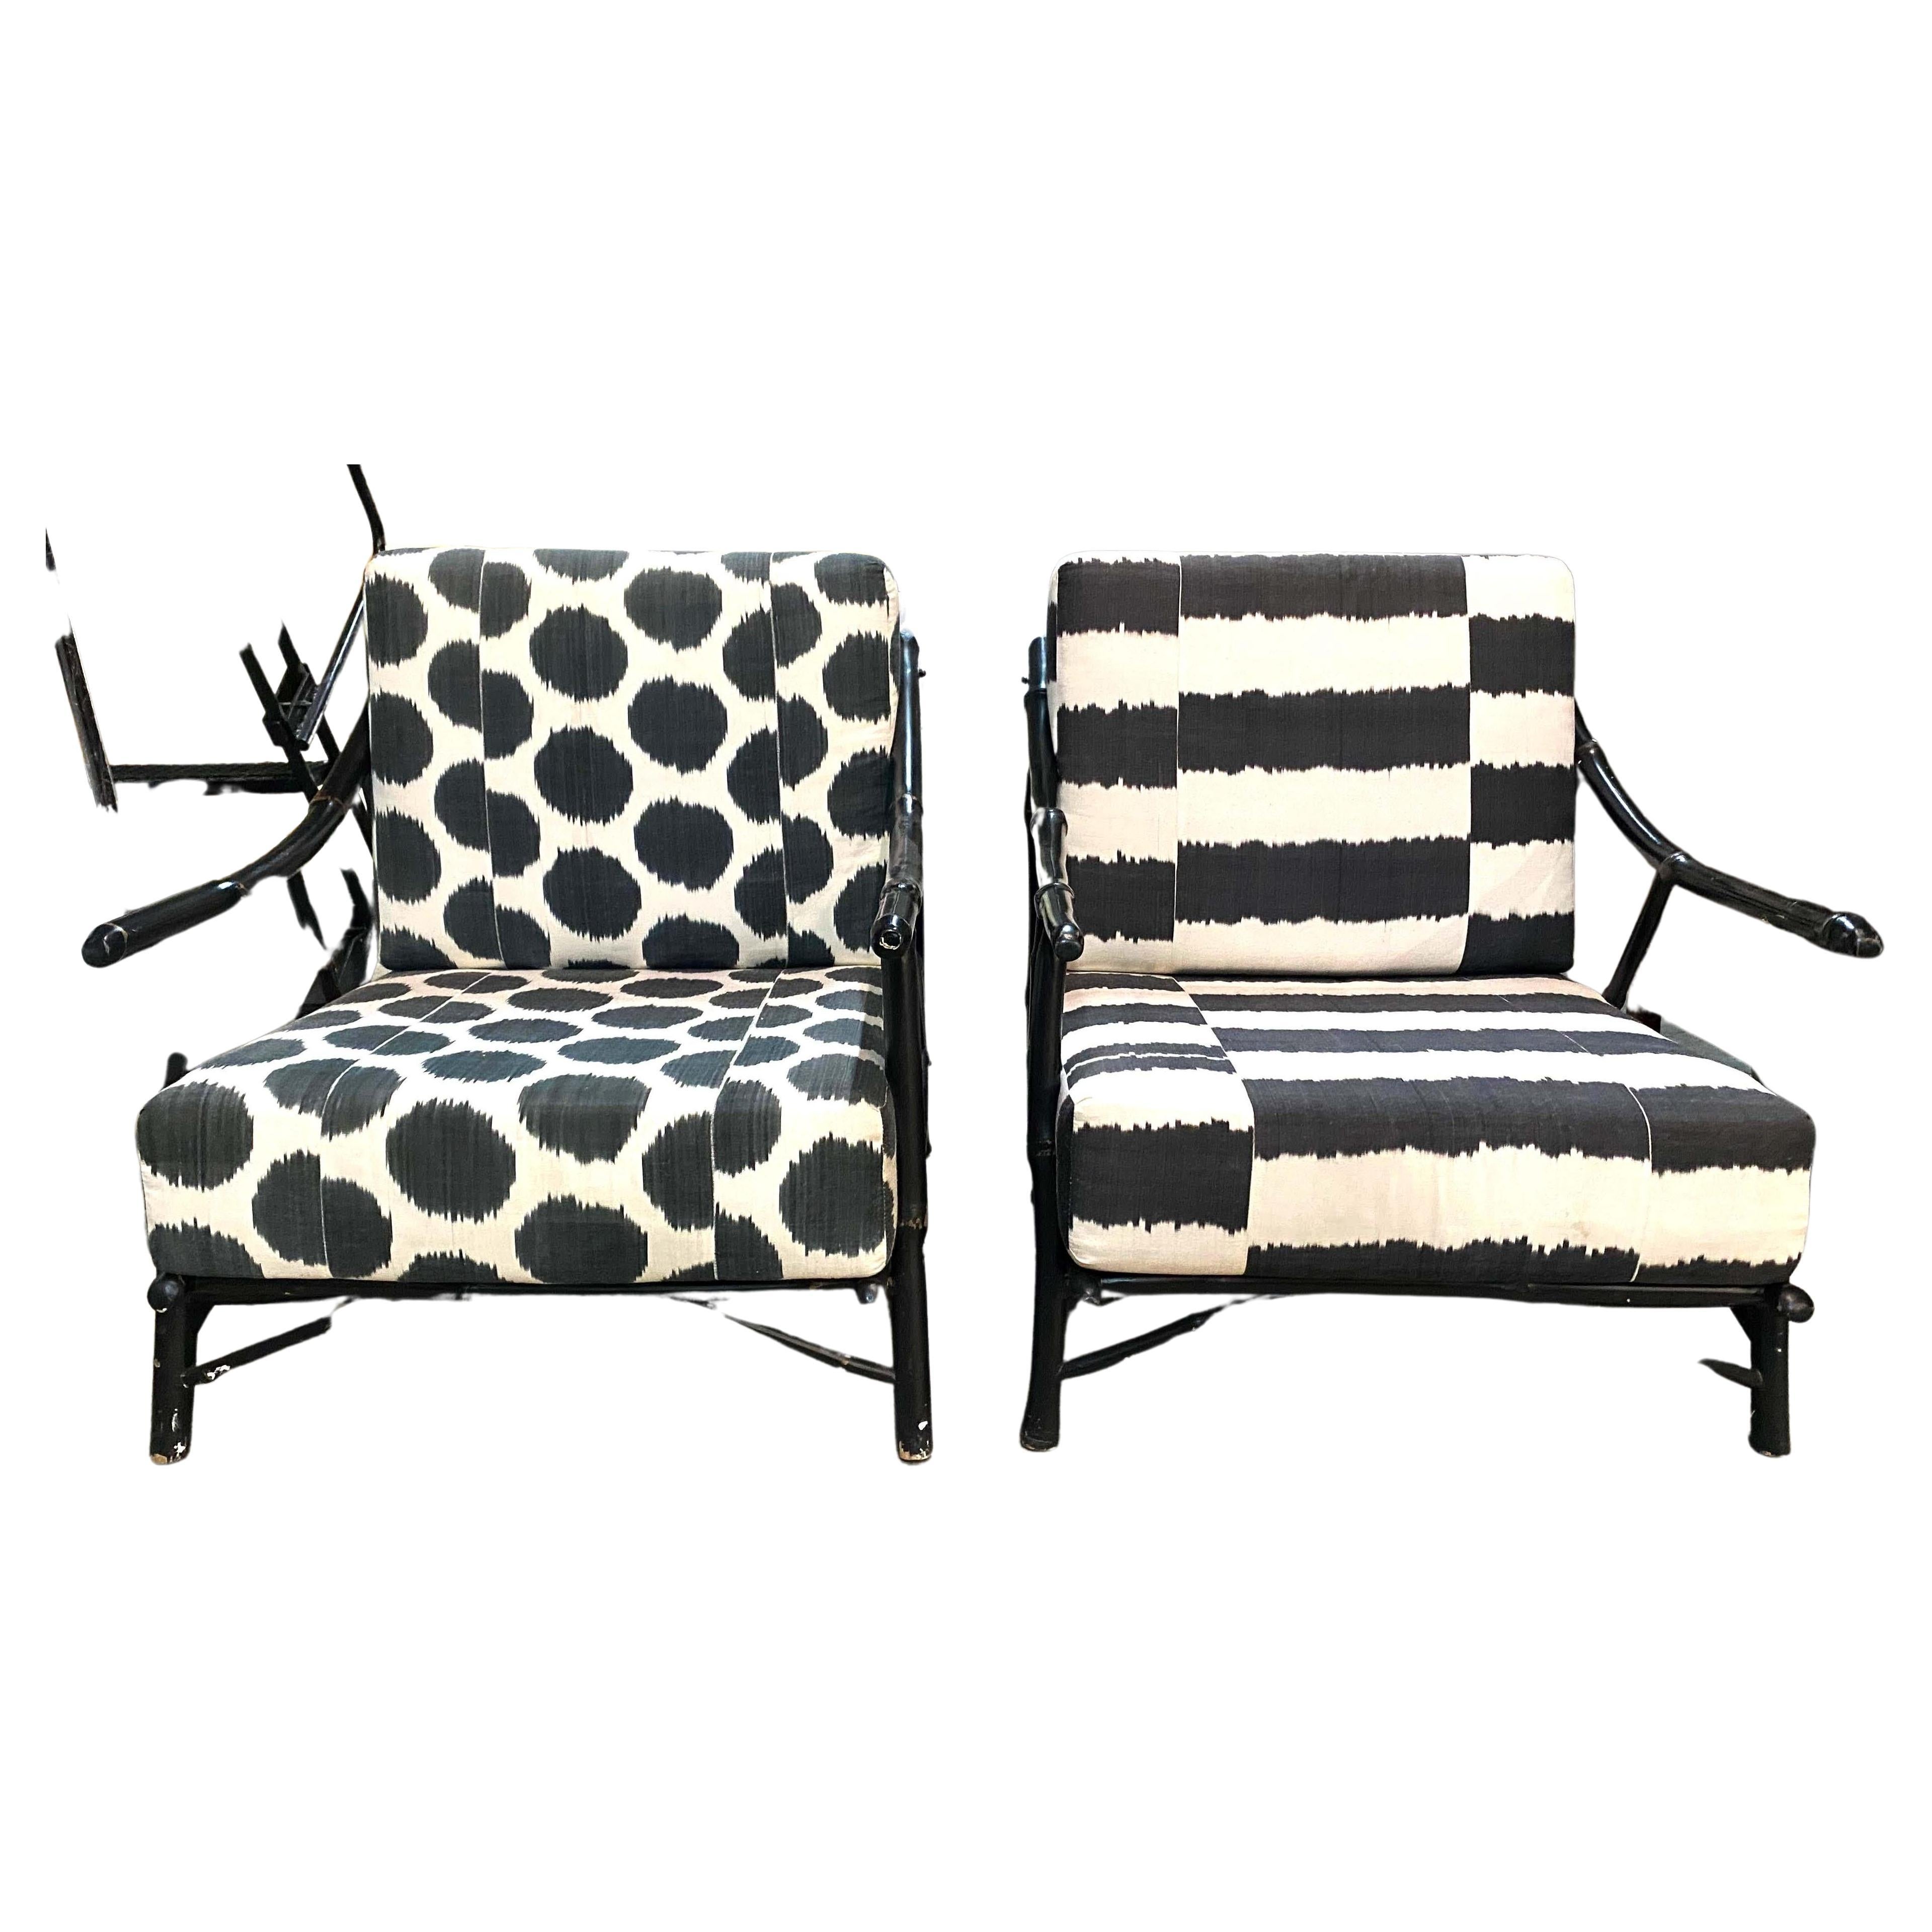 Diese Black Bamboo Rattan Chippendale Style Lounge Stuhl in schwarzem Bambus-Rattan ist mit benutzerdefinierten Kissenbezug in schwarz und weiß Ikat-Stil Stoff, eine mit gestreiften Stoff, der andere mit Polka Dot gemusterten Stoff akzentuiert.